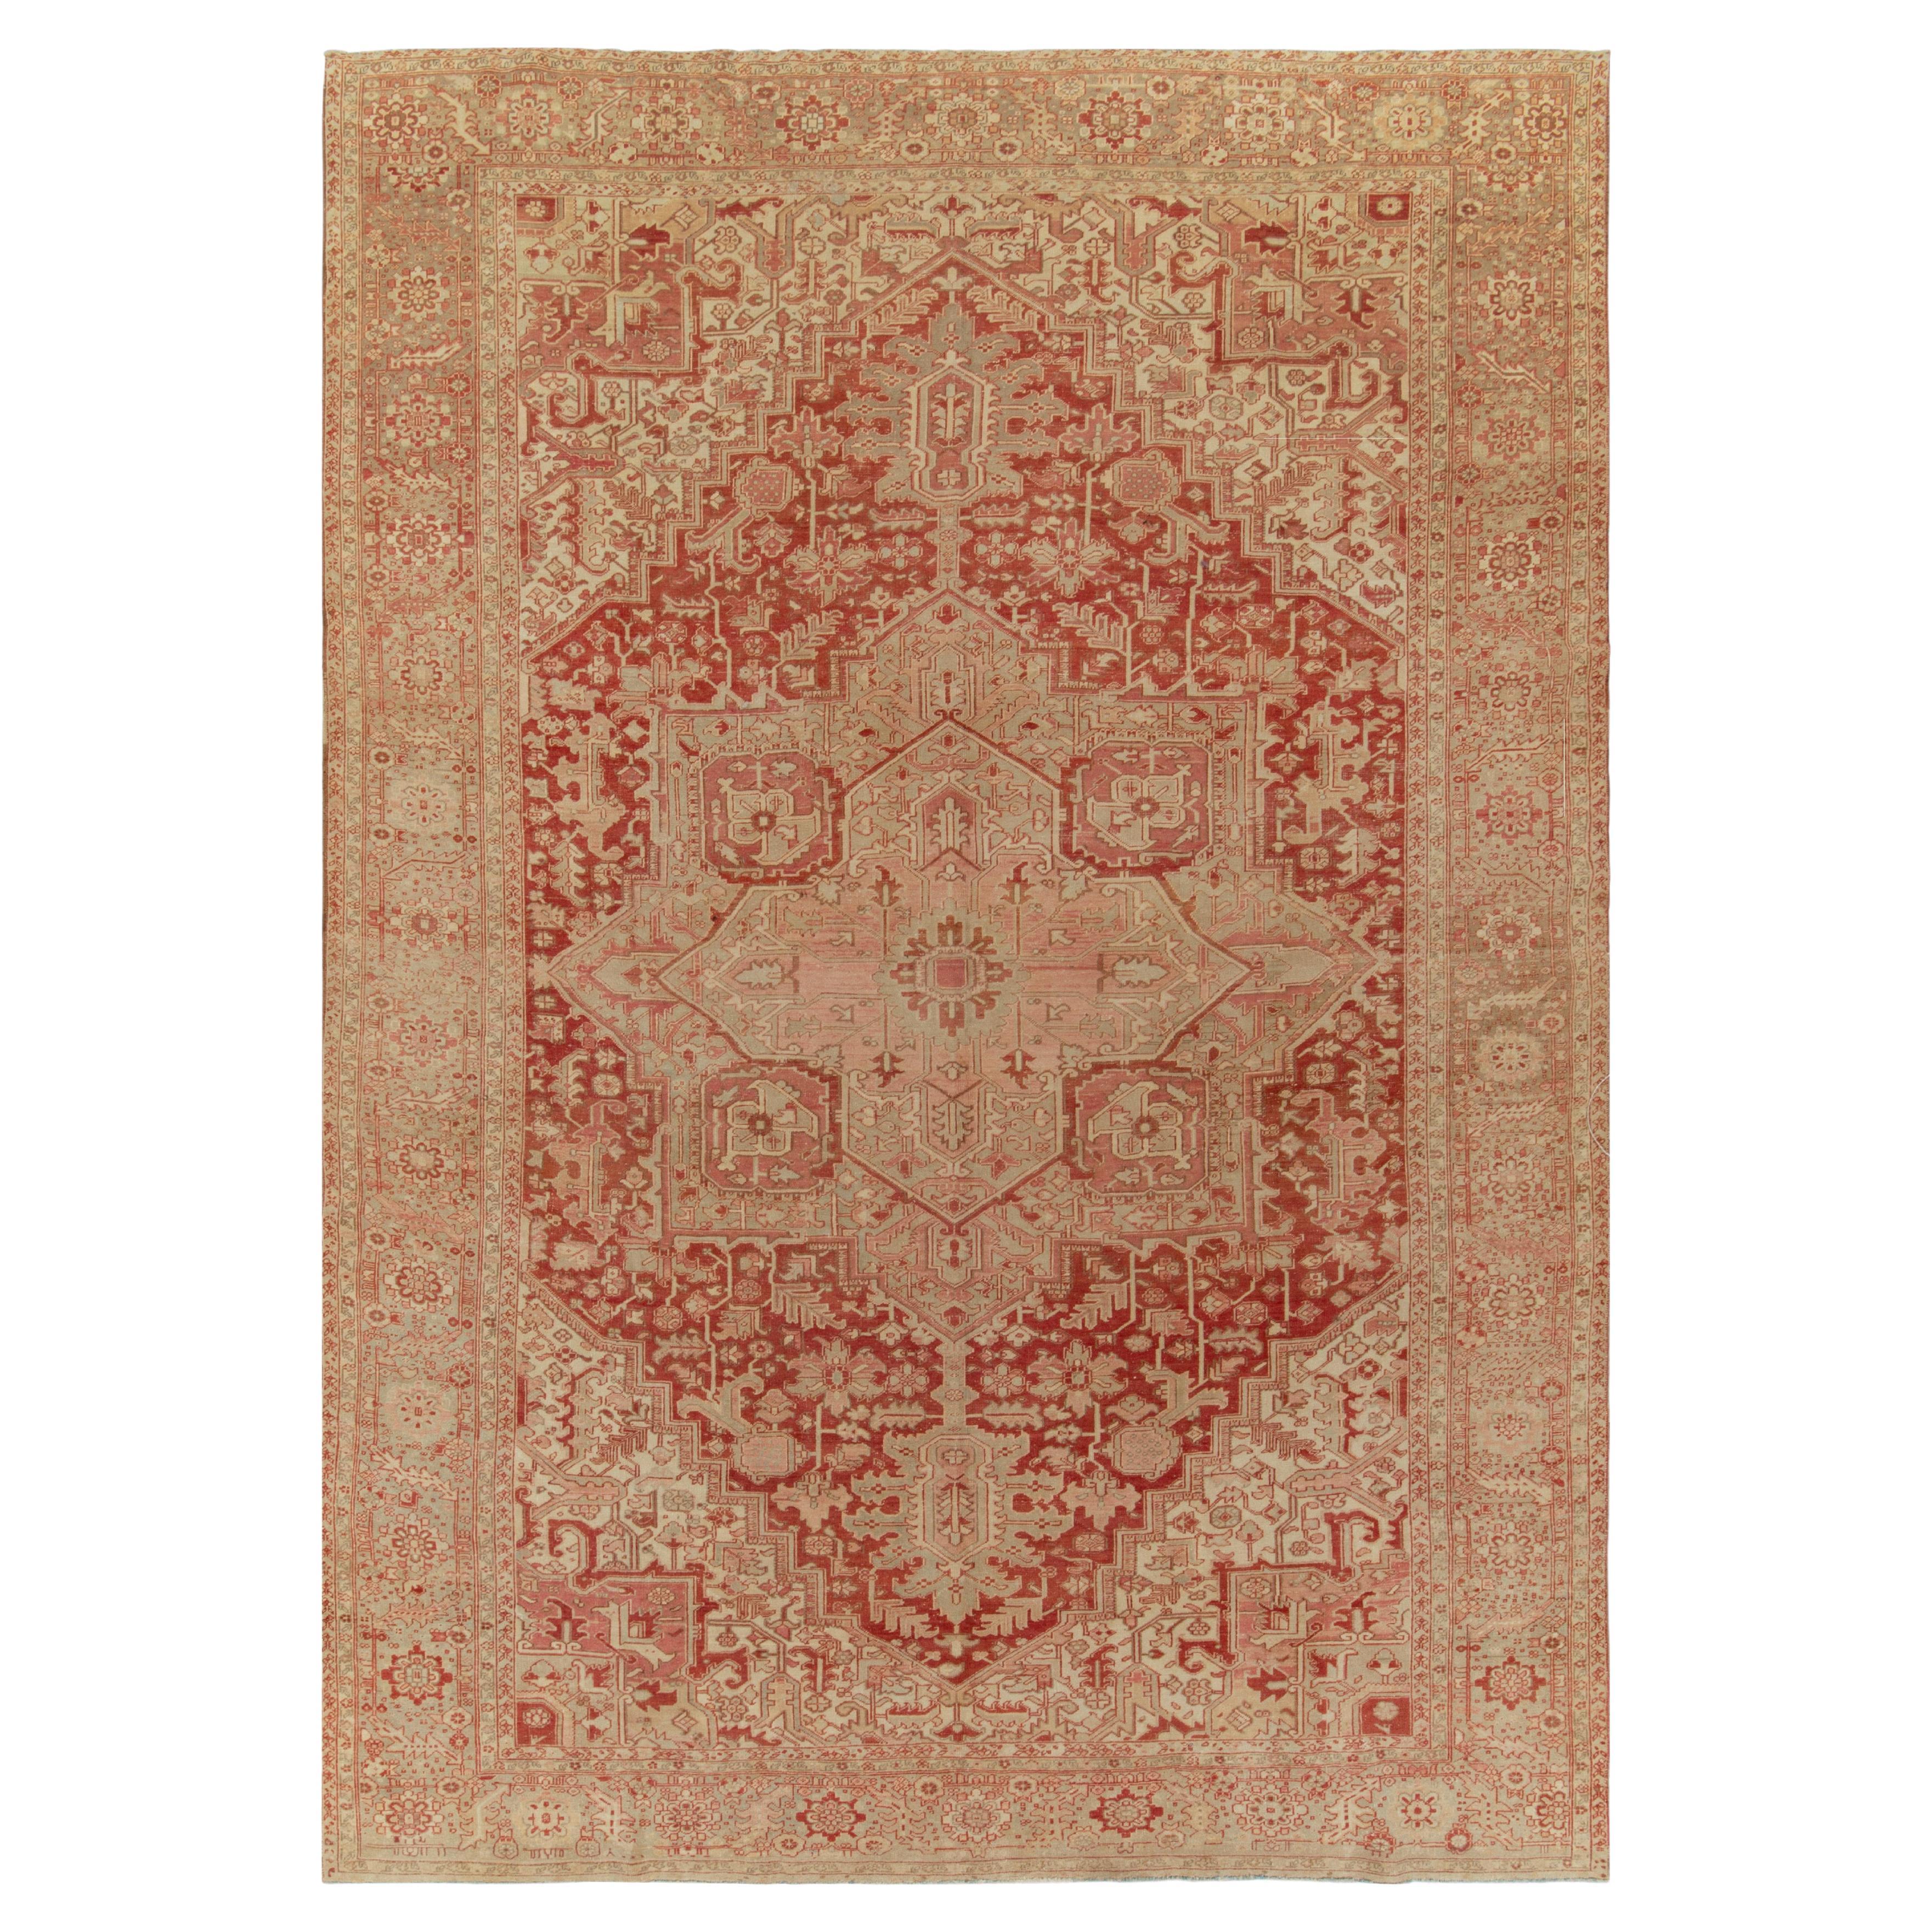 1950s Vintage Serapi rug in Red & Pink Floral Medallion Patterns by Rug & Kilim